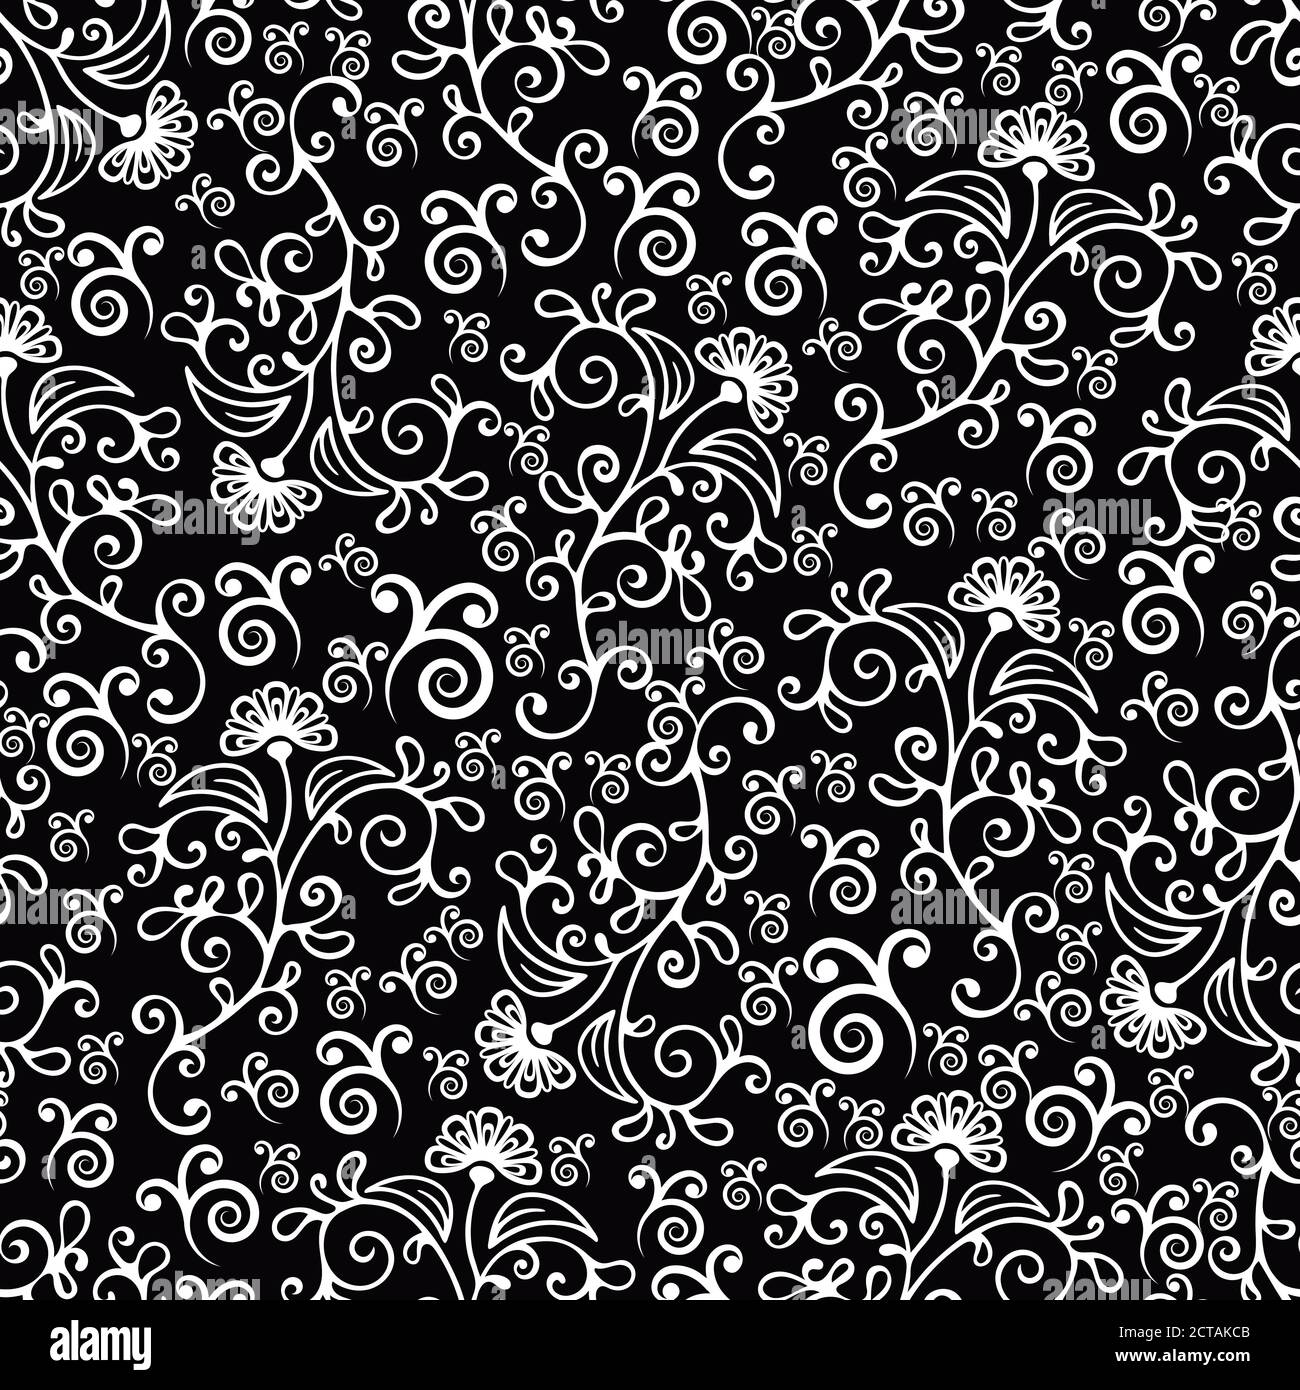 Swirl motivo floreale astratto senza cuciture, ornamento bianco e nero con ricci, petali e boccioli di fiori. Per la progettazione di tessuti, carta da parati, involucro, superficie Illustrazione Vettoriale